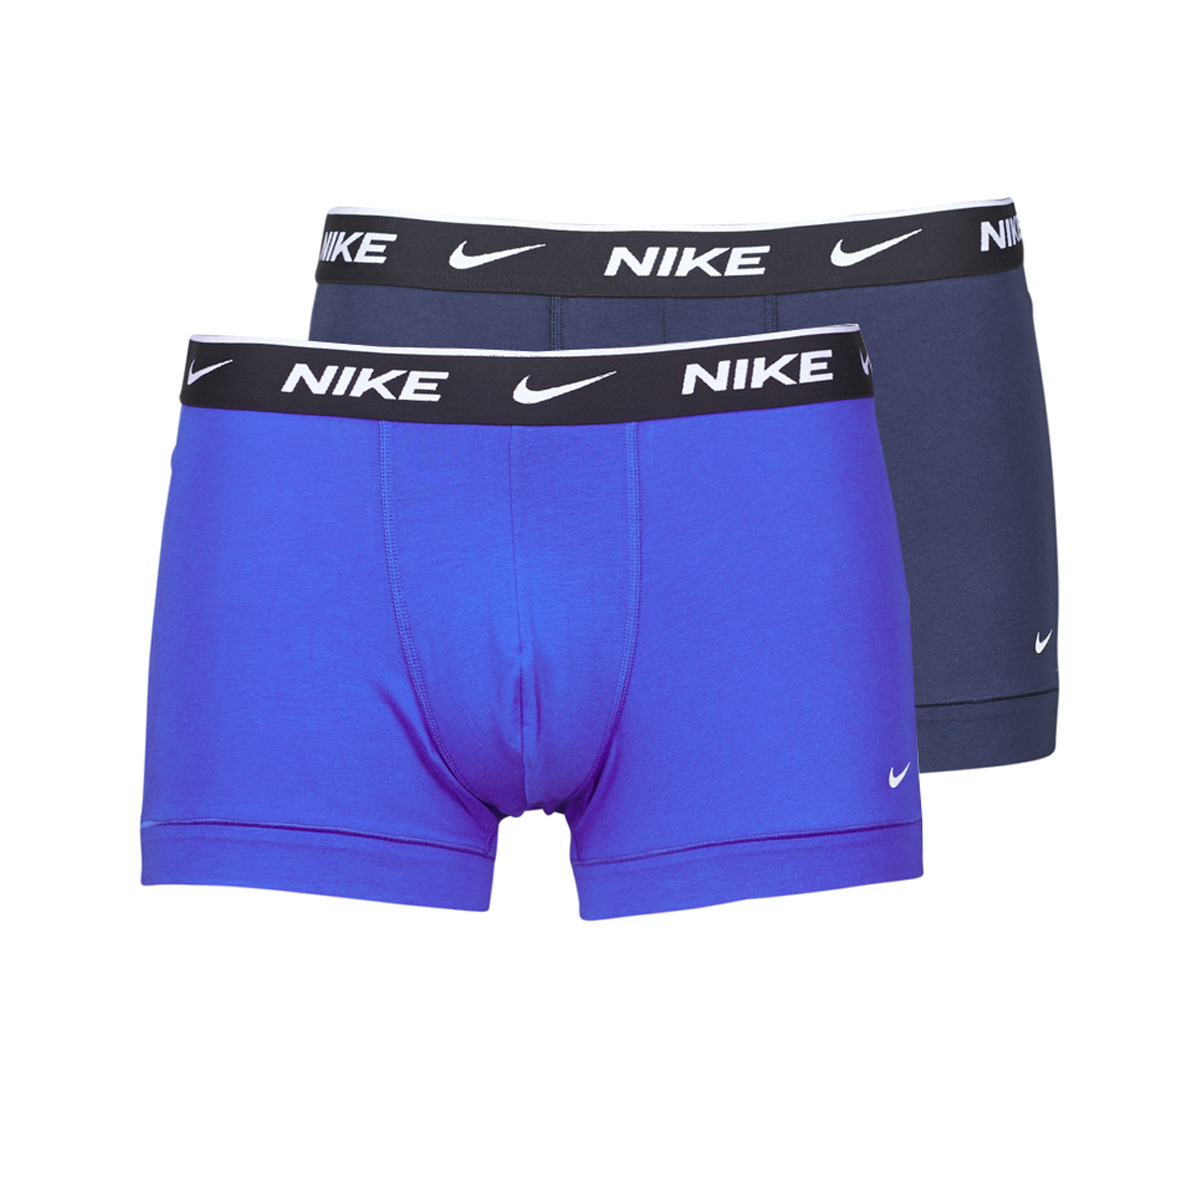 Lenjerie intimă Bărbați Boxeri Nike EVERYDAY COTTON STRETCH X2 Albastru / Albastru